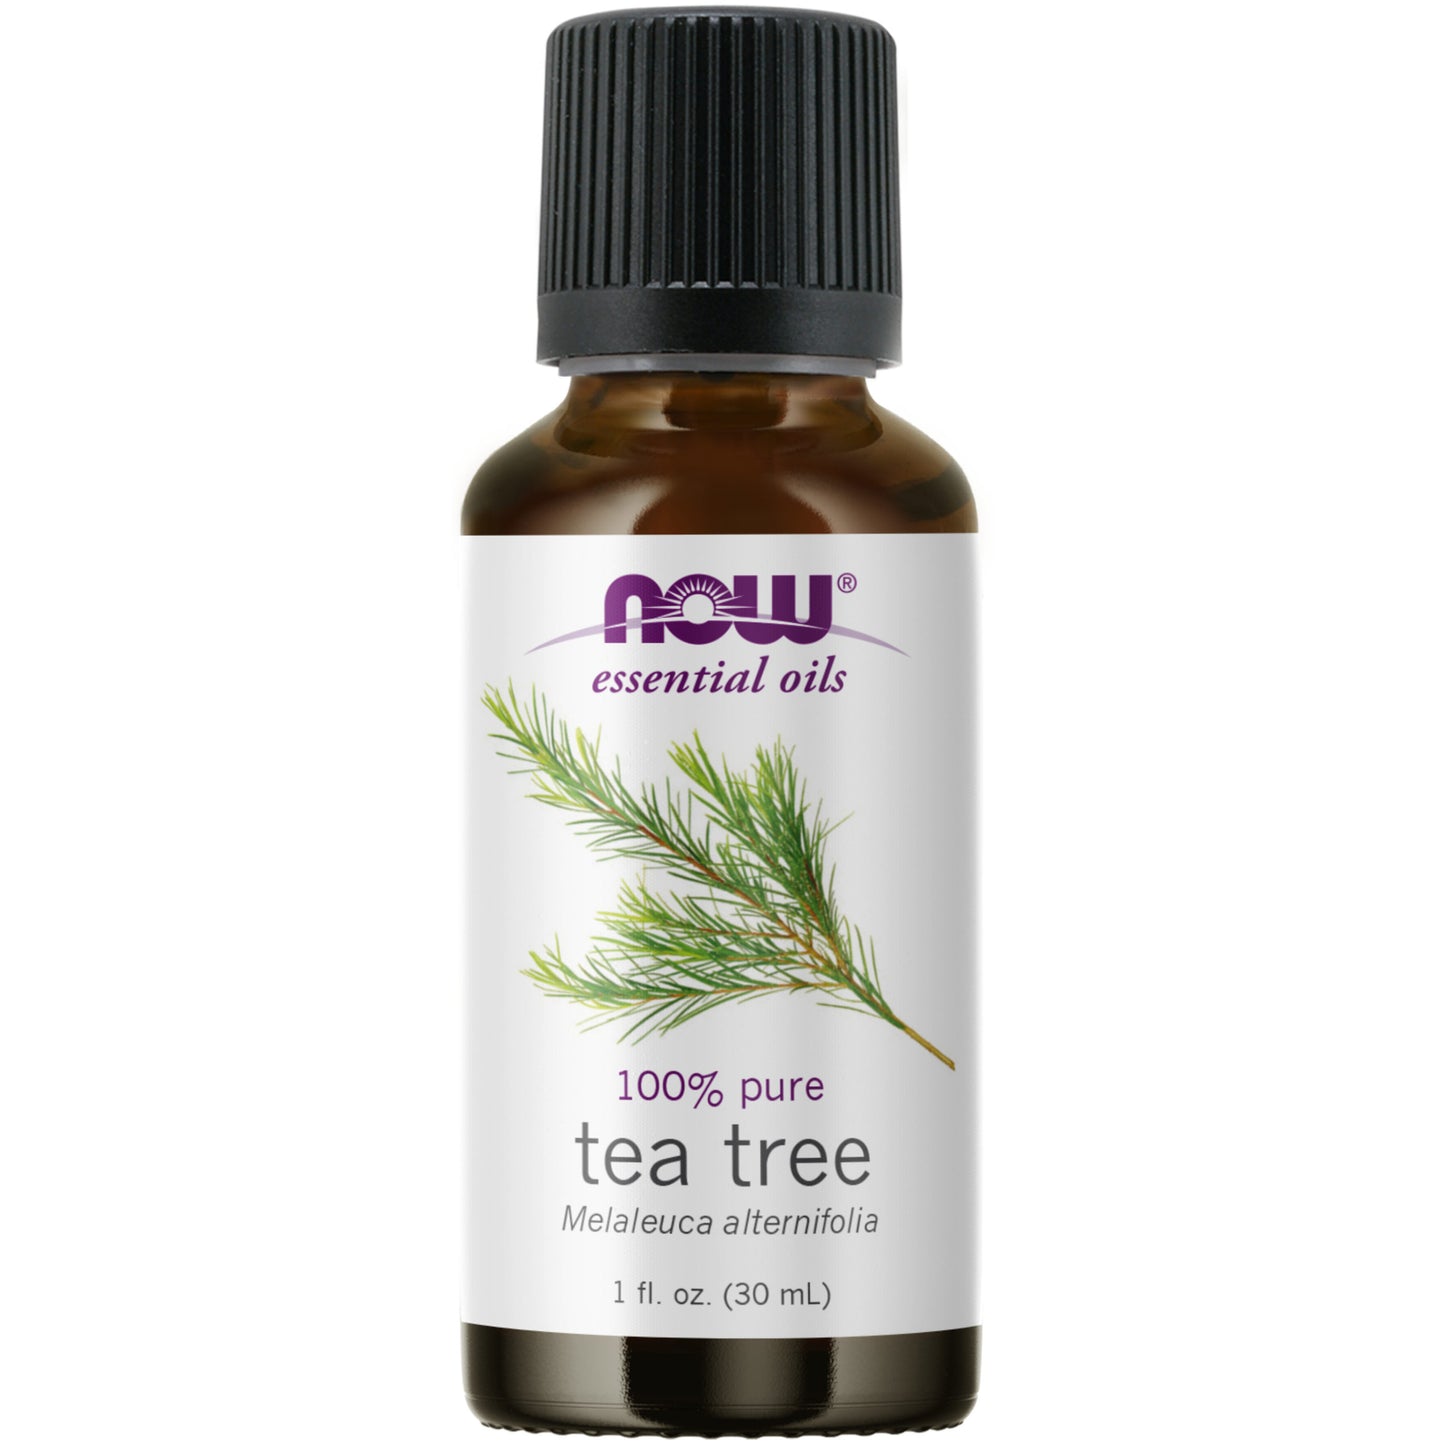 Tea Tree Oil (30 ml)